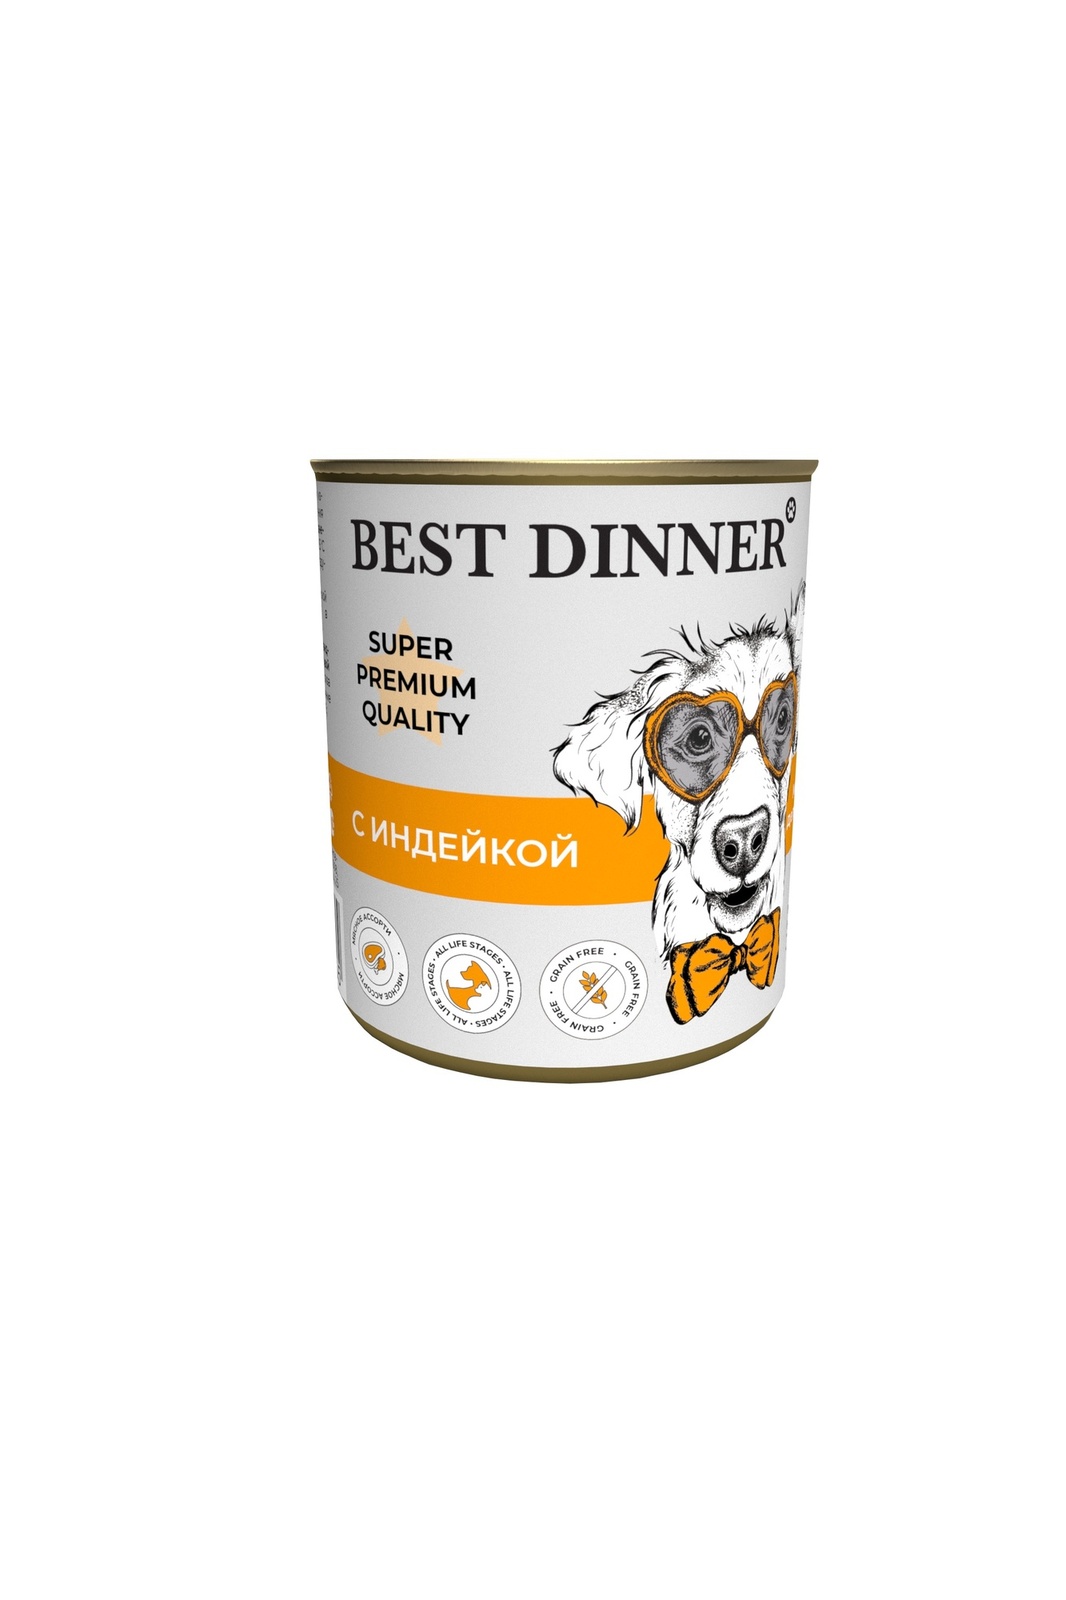 Best Dinner Best Dinner консервы для собак Super Premium С индейкой (340 г) best dinner best dinner гипоаллергенные консервы индейка и кролик для собак всех пород 340 г